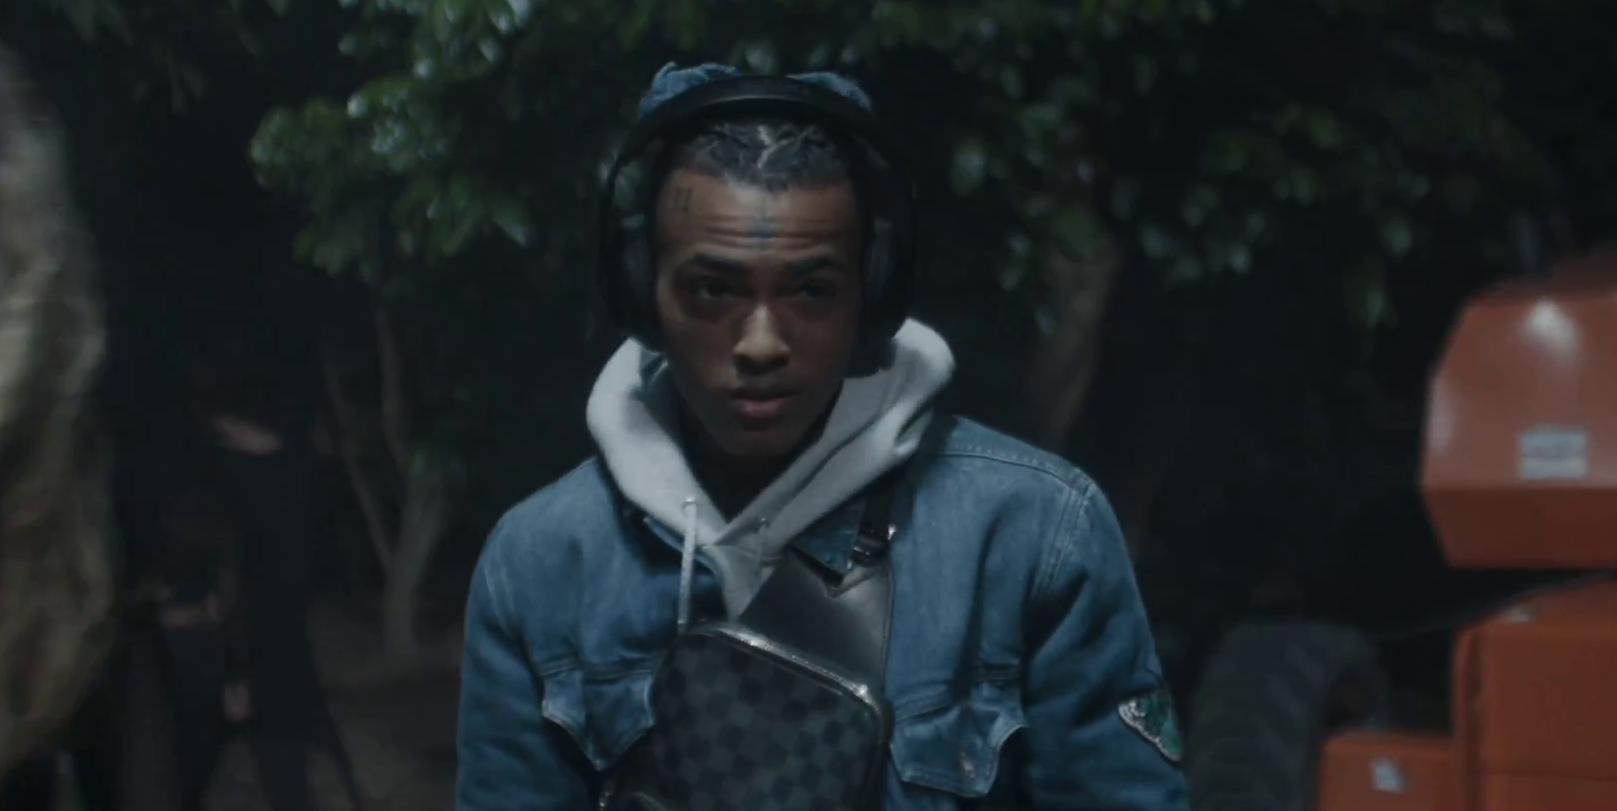 Видео показывает, как рэпер слушает музыку, наблюдая за своими друзьями на вечеринке в лесу